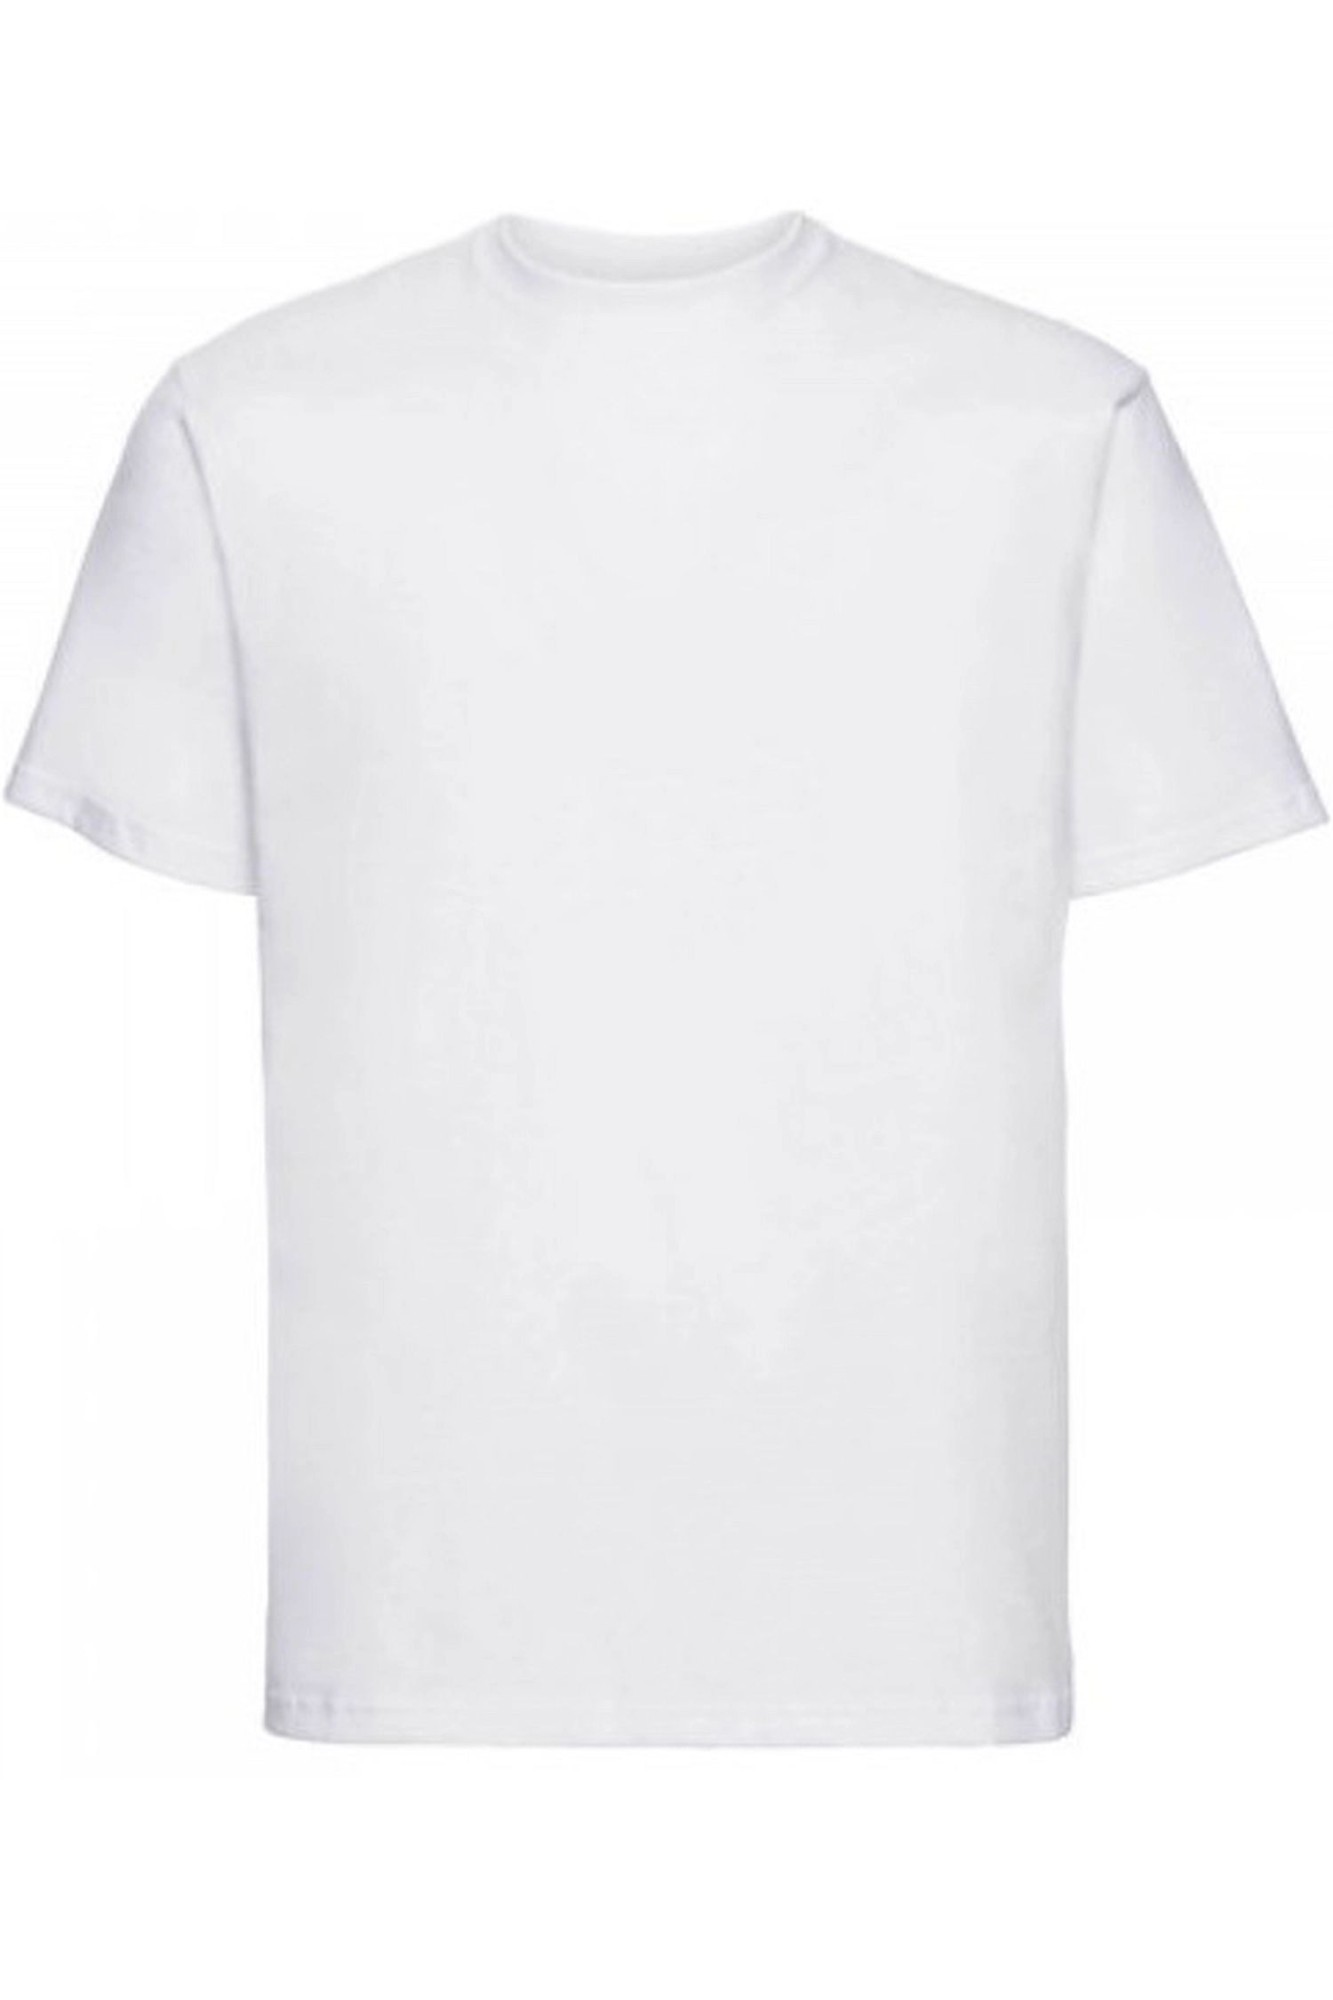 Pánské tričko 002 white - NOVITI Bílá XL